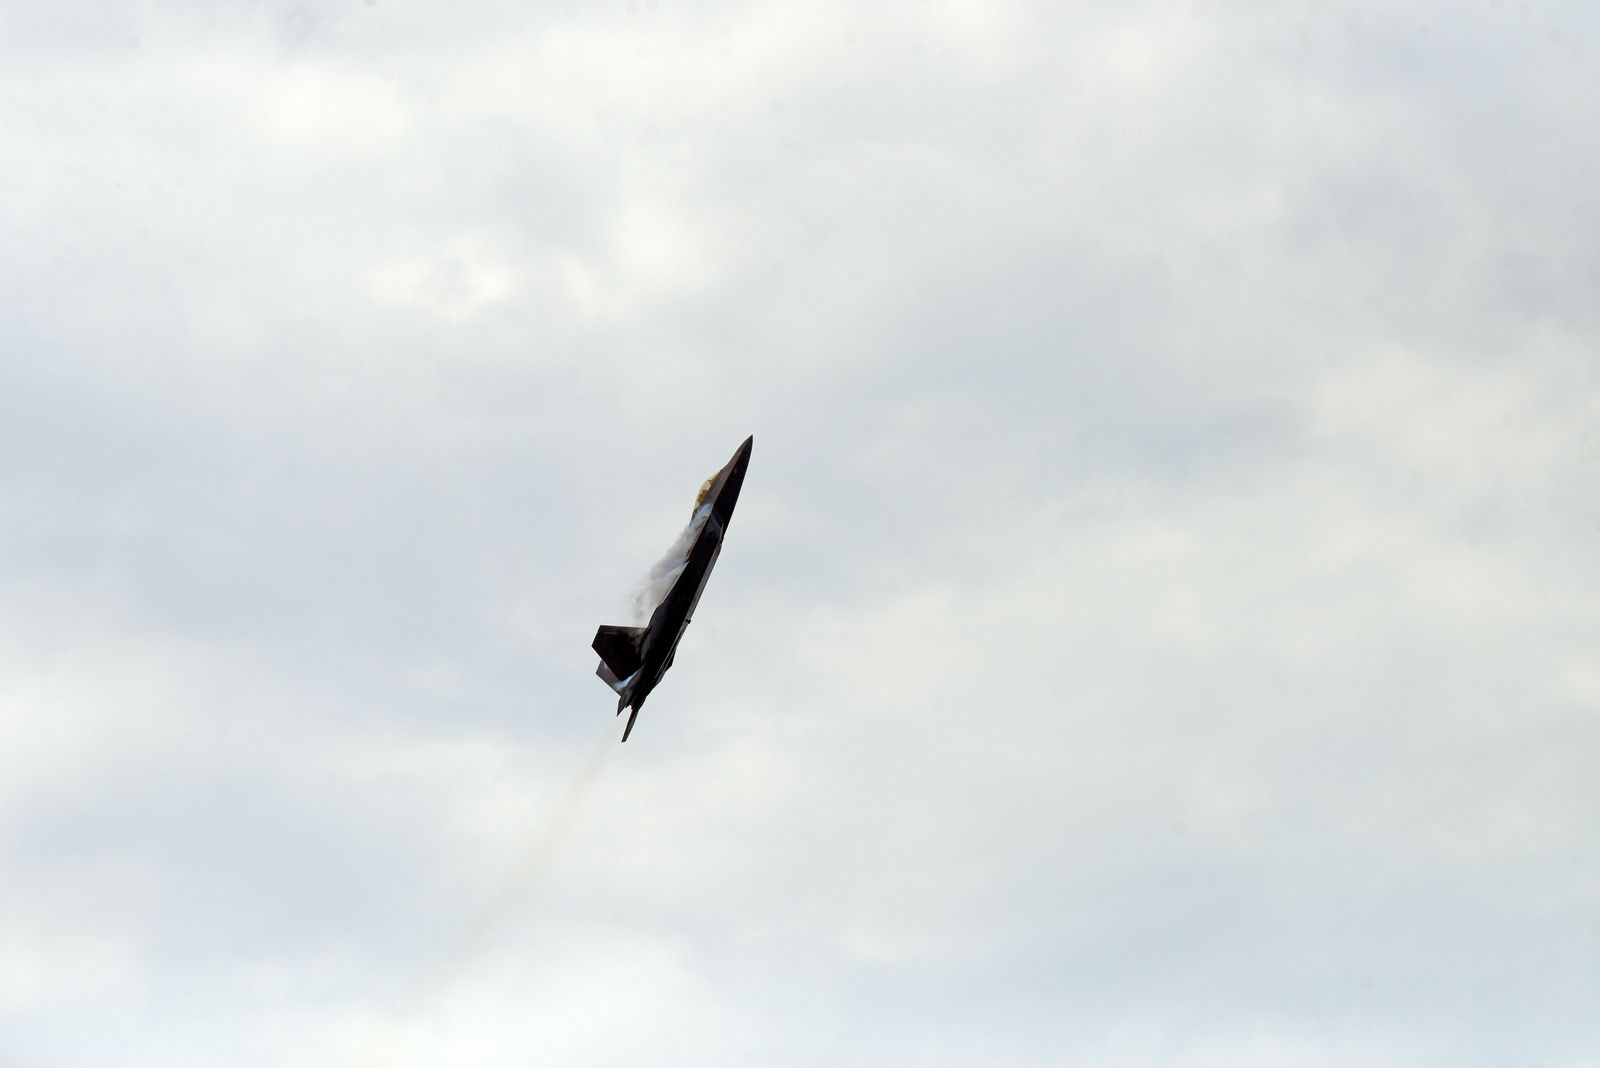 طائرة من طراز F-22 تابعة لسلاح الجو الأميركي تؤدي عرضًا في حدث يوم الذكرى في لونغ آيلاند. - REUTERS